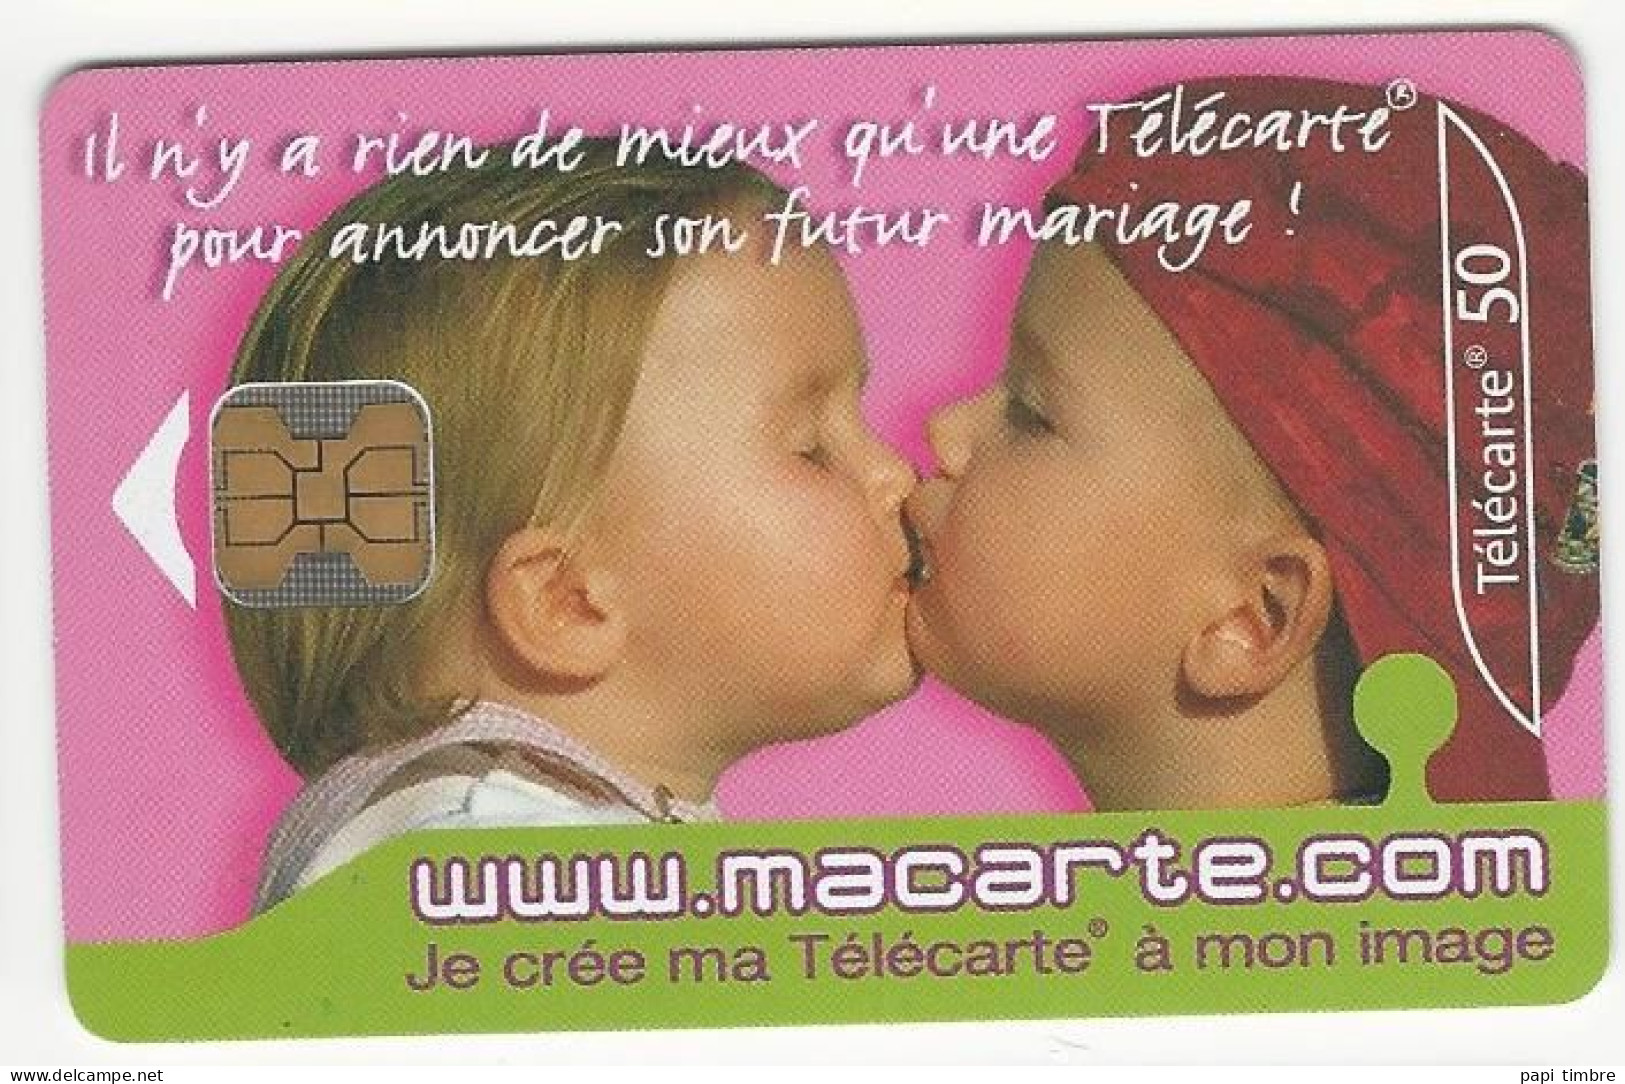 Télécarte "macarte.com" Je Crée Ma Télécarte à Mon Image - 50 Unités - Personaggi